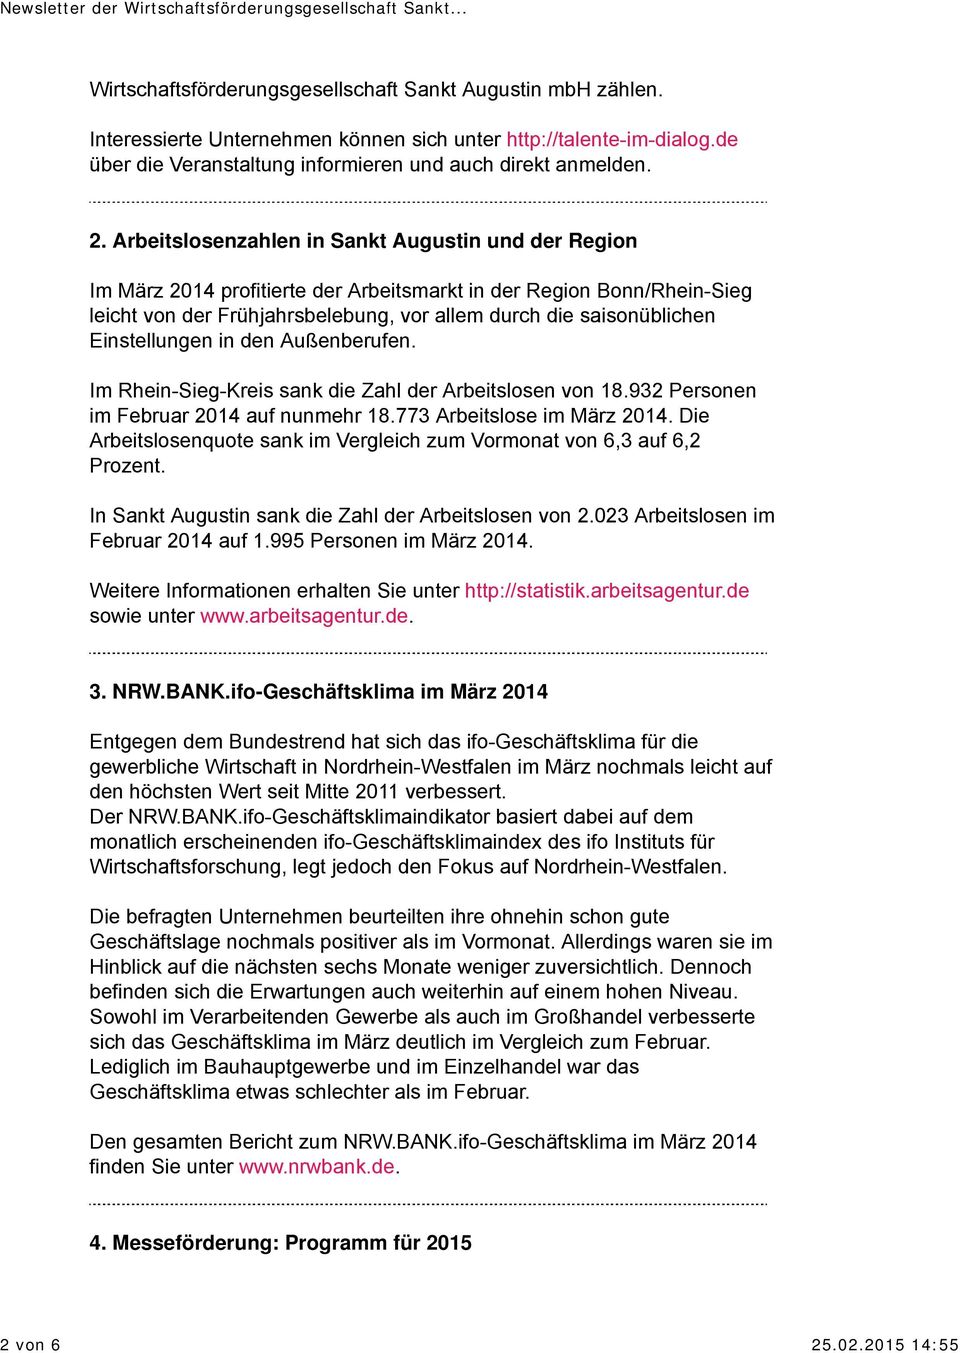 Arbeitslosenzahlen in Sankt Augustin und der Region Im März 2014 profitierte der Arbeitsmarkt in der Region Bonn/Rhein-Sieg leicht von der Frühjahrsbelebung, vor allem durch die saisonüblichen